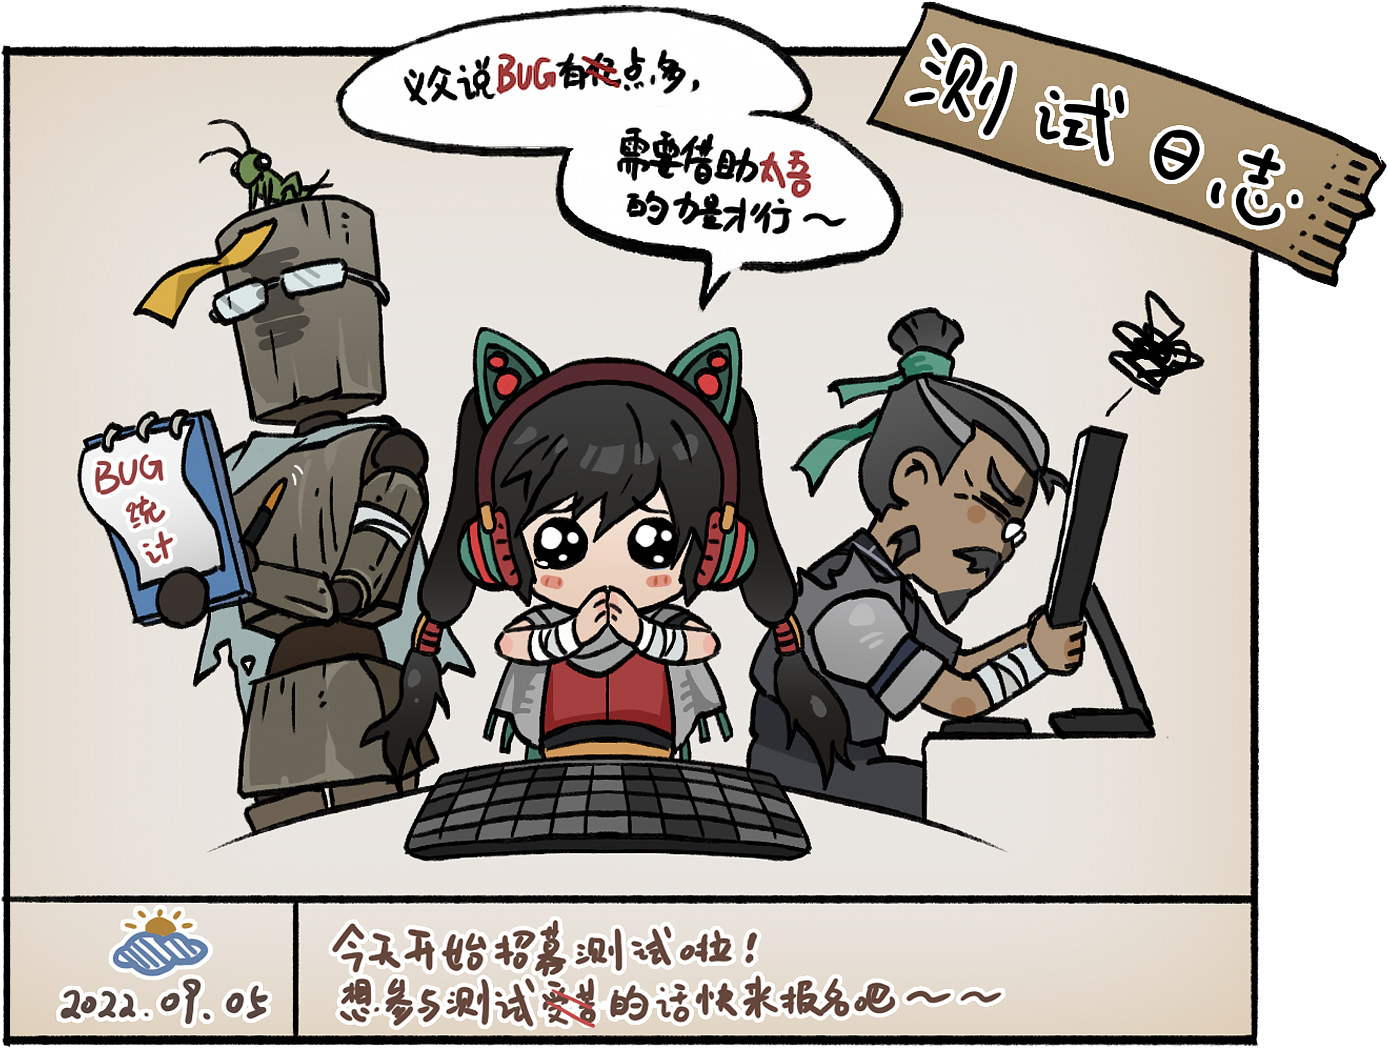 《太吾绘卷》招募玩家参与功能测试 9月9日开始